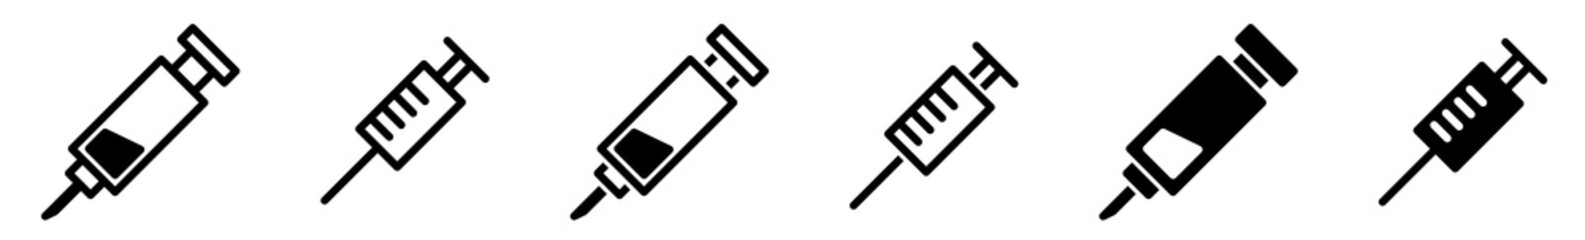 Syringe Injection Icon Black | Syringes Illustration | Needle Symbol | Medicine Logo | Inject Sign | Isolated | Variations